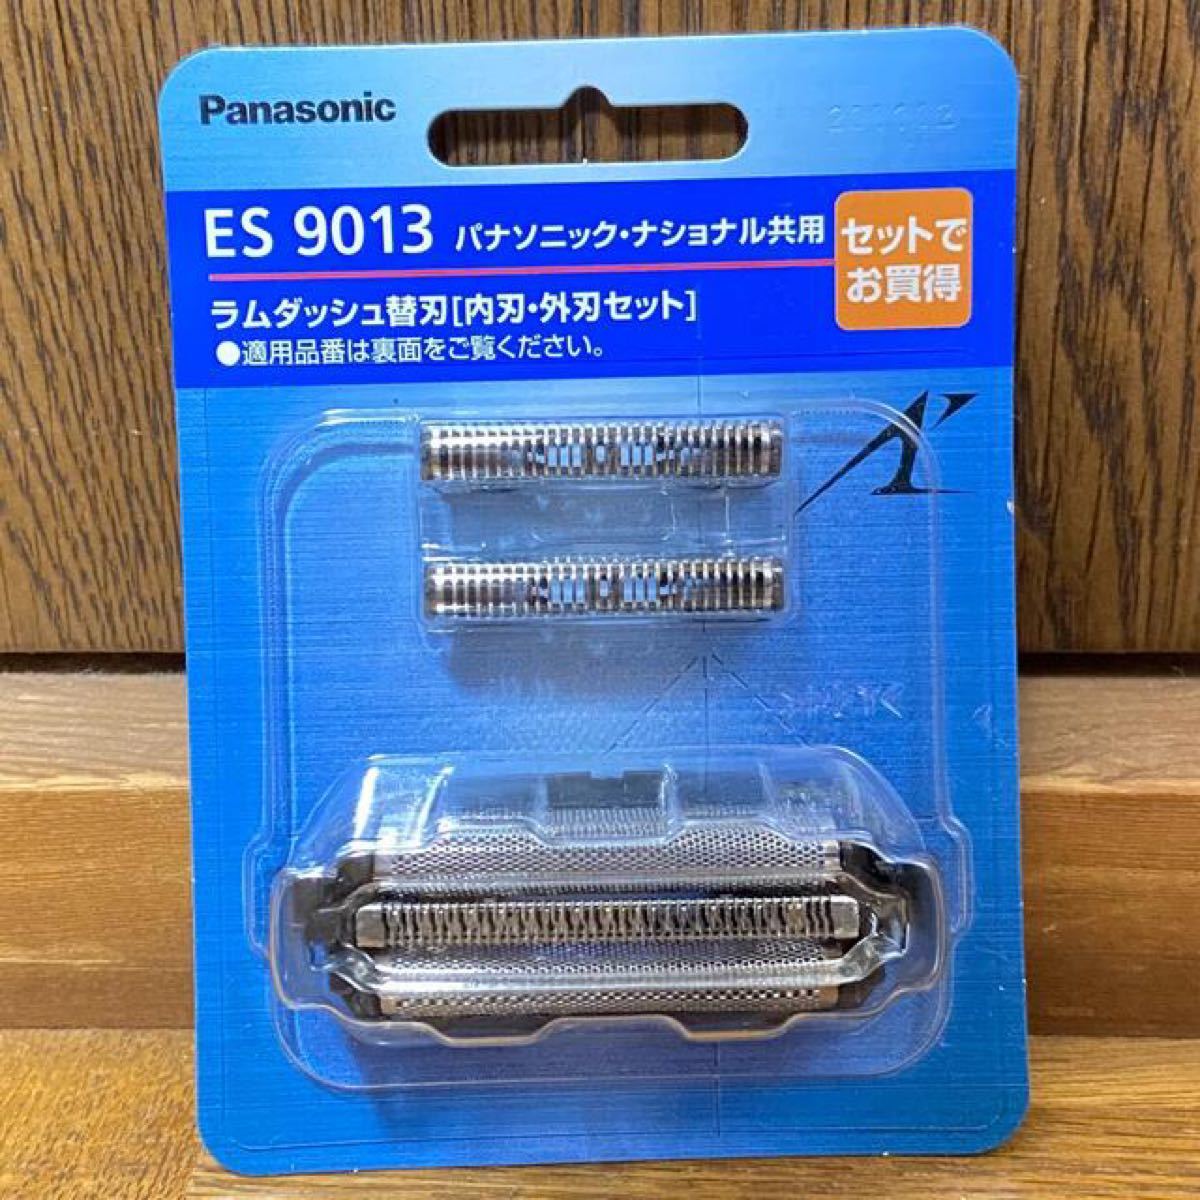 パナソニックラムダッシュ Panasonic メンズシェーバー 替刃ES9013